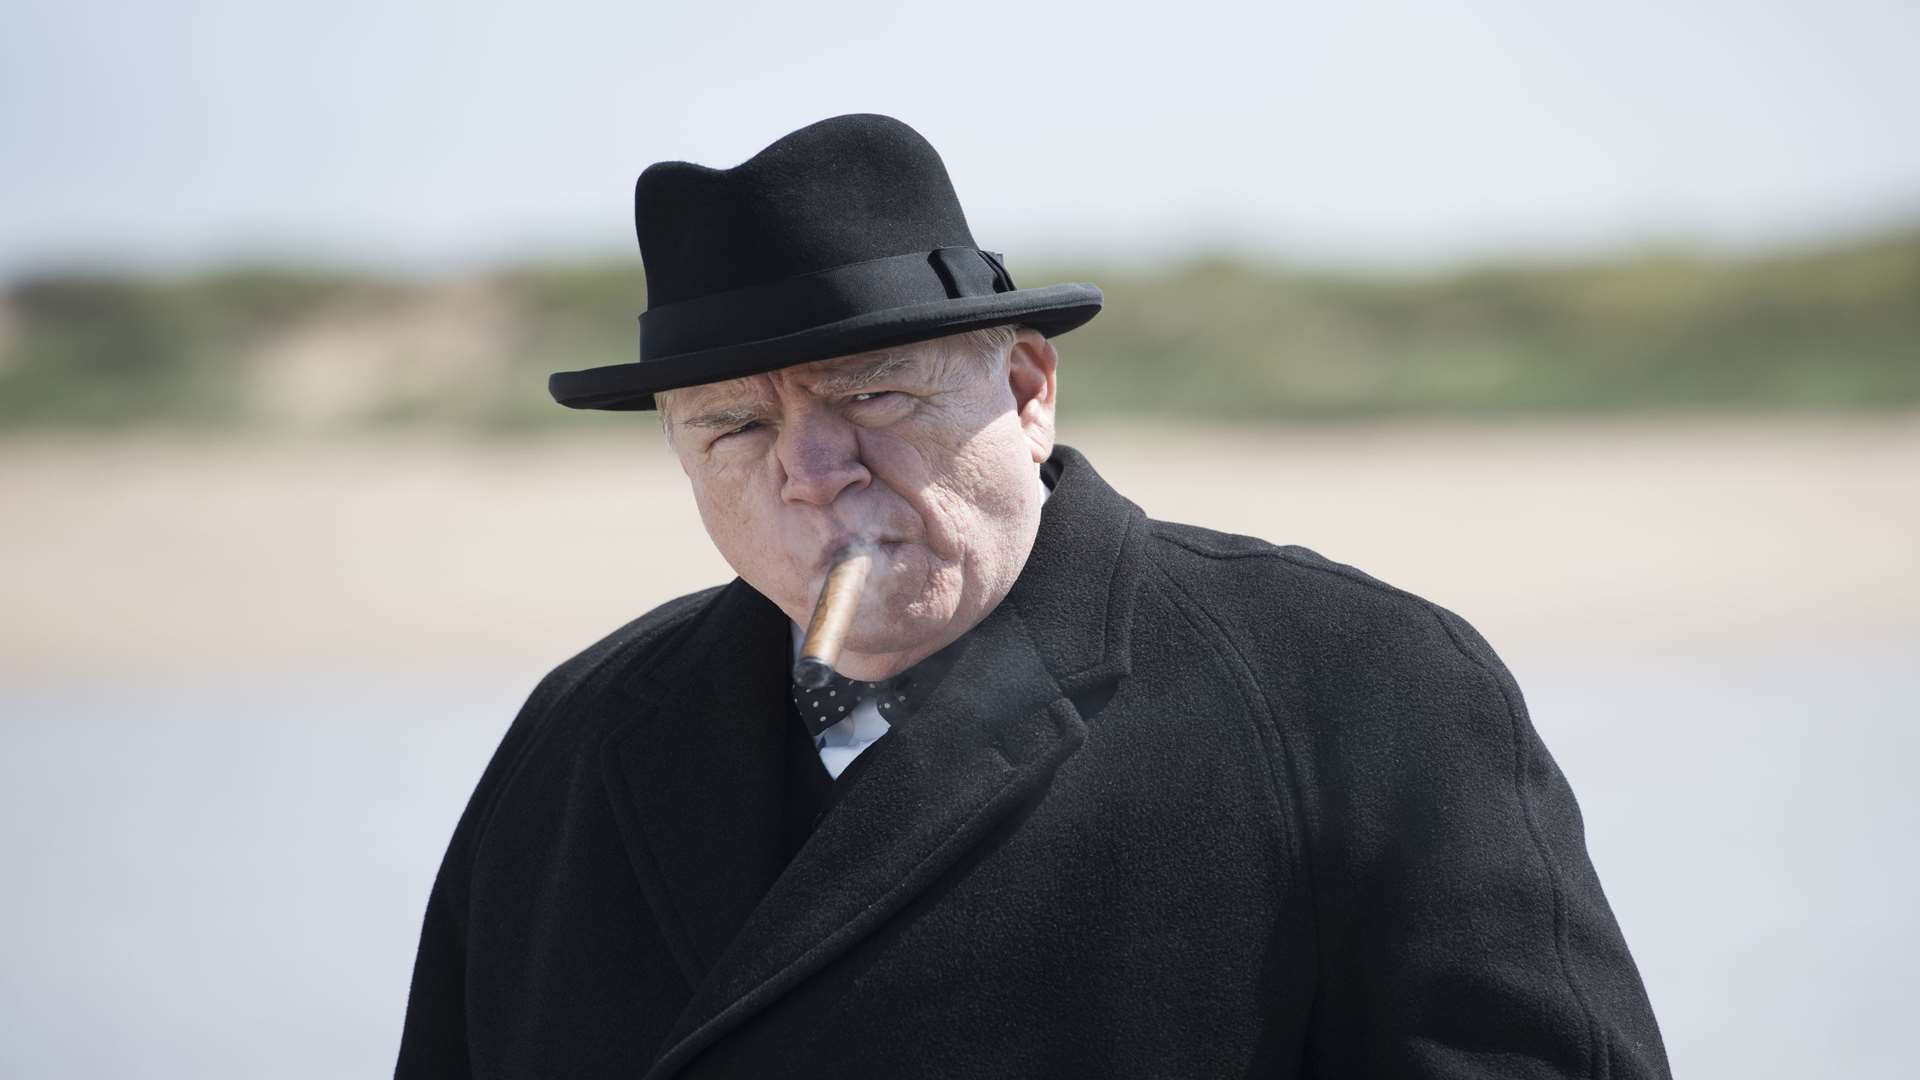 Brian Cox as Churchill Picture: PA Photo/Lionsgate/Graeme Hunter